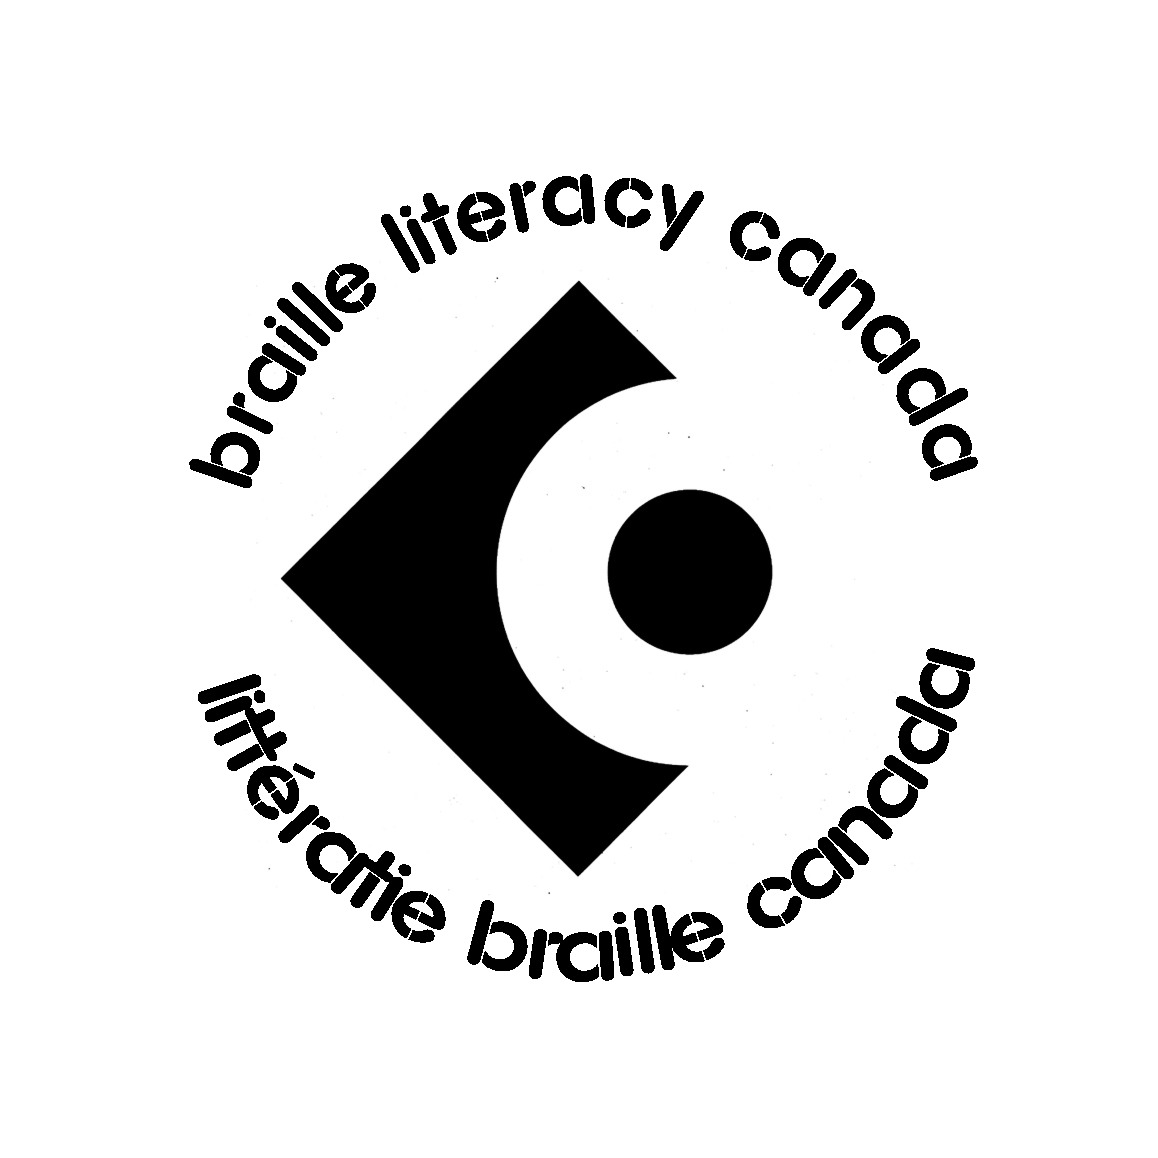 Logo de Littératie braille Canada. Texte noir sur fond blanc : braille literacy canada se courbe autour d'une image en haut ; littératie braille canada se courbe autour de l'icône en bas. L'icône est un carré noir avec un cercle blanc découpant un point noir.